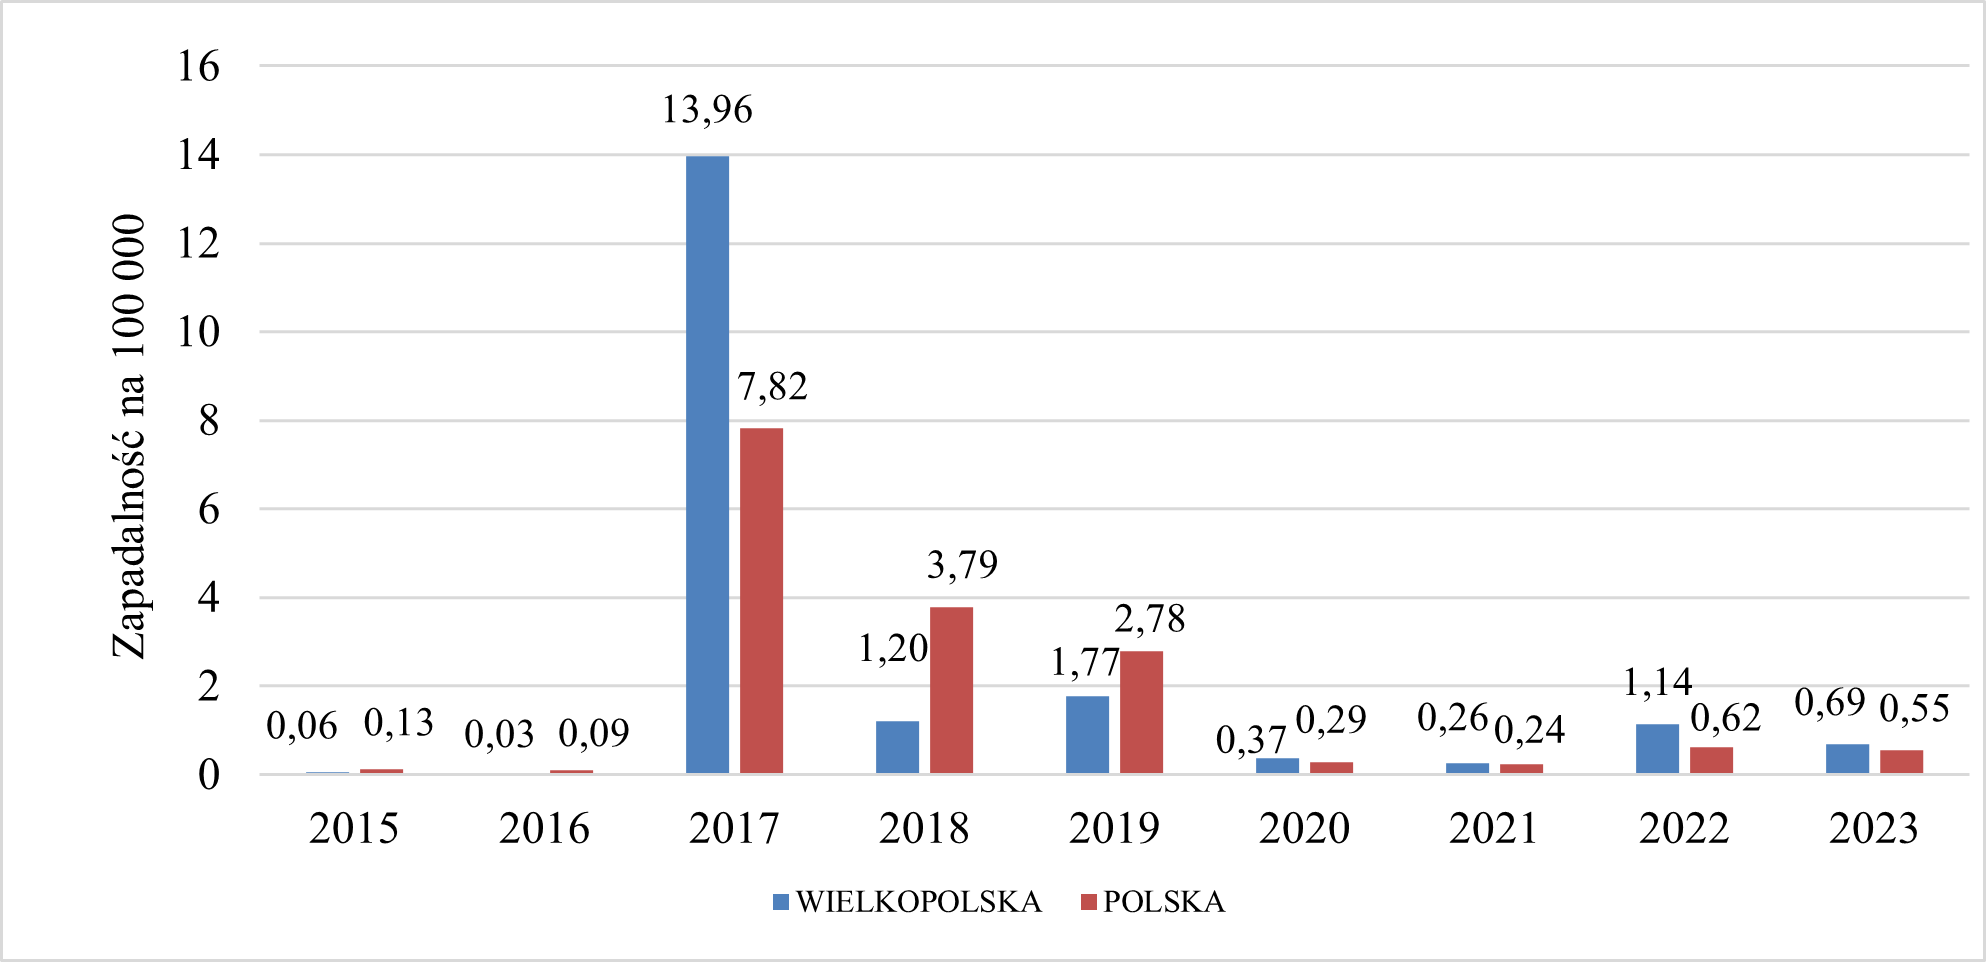 Sytuacja epidemiologiczna zachorowań na wirusowe zapalenie wątroby typu A w Wielkopolsce i w Polsce w roku 2023 była stabilna. W 2023 r. w Wielkopolsce zapadalność wyniosła 0,69 na 100 tysięcy mieszkańców, natomiast w Polsce zapadalność wyniosła 0,55 na 100 tysięcy mieszkańców. W latach 2015 – 2023 najwyższa zapadalność wystąpiła w roku 2017 – w Wielkopolsce 13,96 na 100 tysięcy mieszkańców, a w Polsce 7,82 na 100 tysięcy mieszkańców, co związane było z wystąpieniem licznych ognisk epidemicznych zachorowań na całym świecie. 